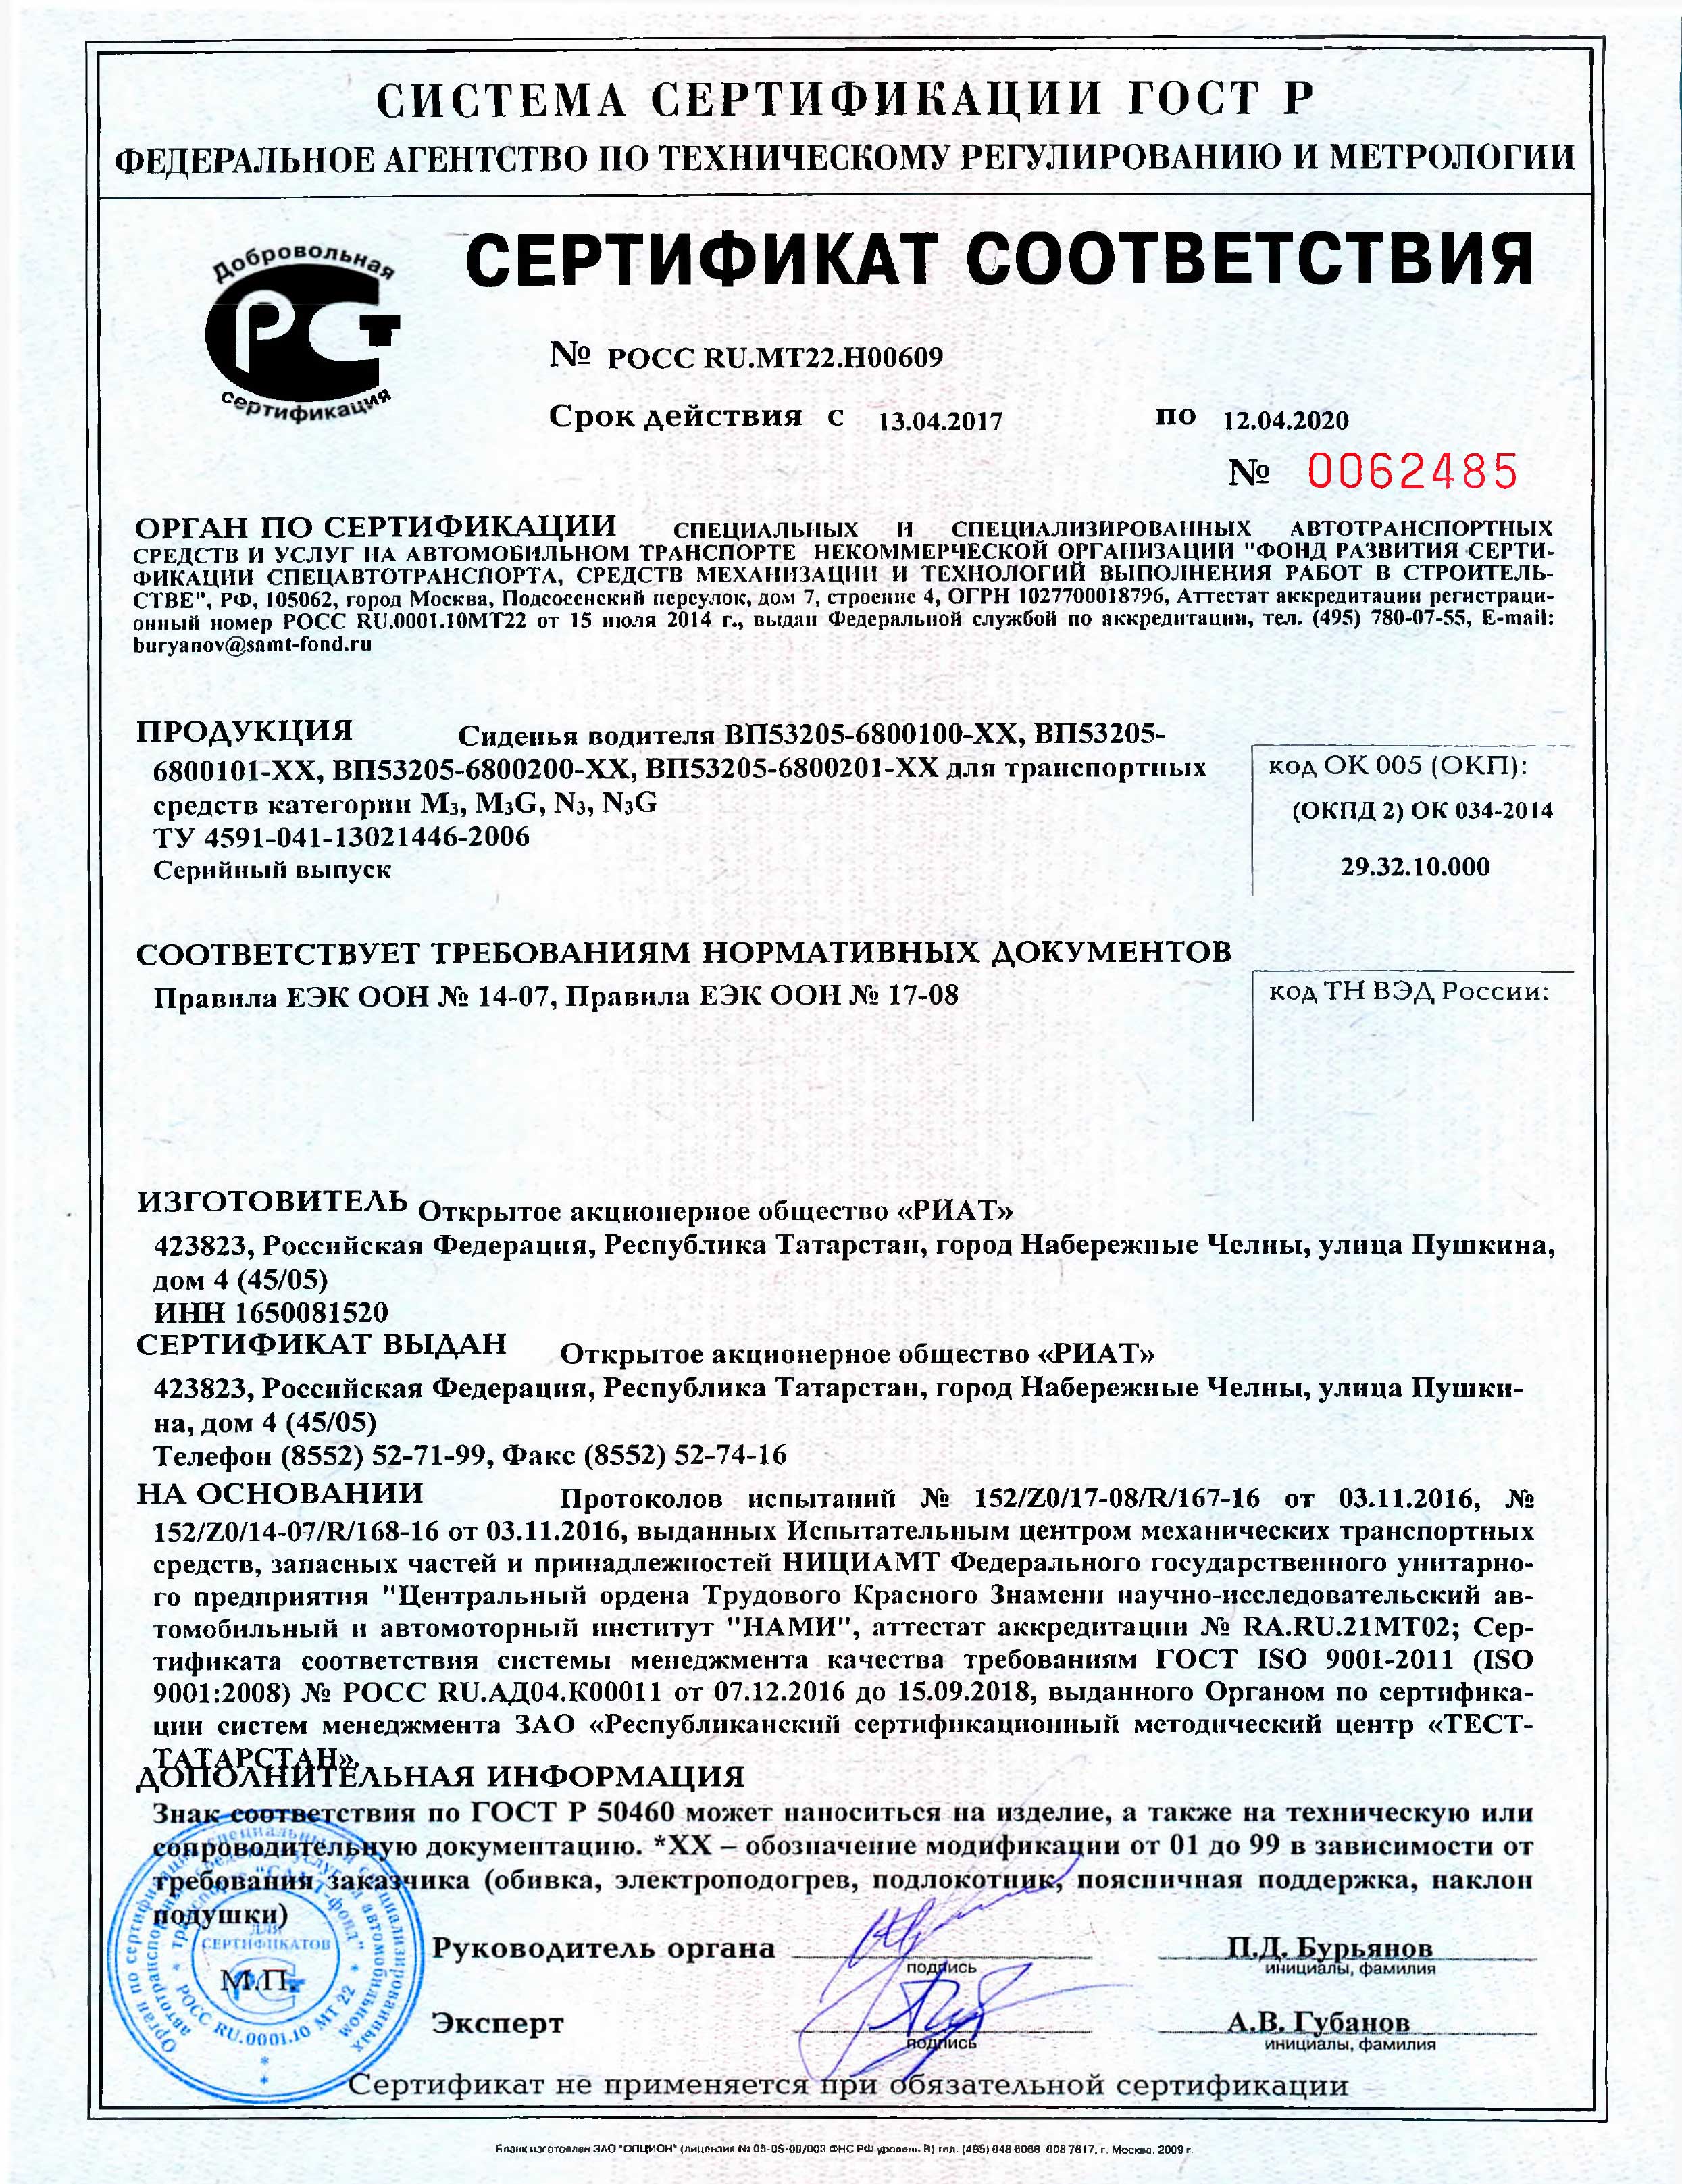 Сертификат сиденья РИАТ POCC-RU.MT22.H00609